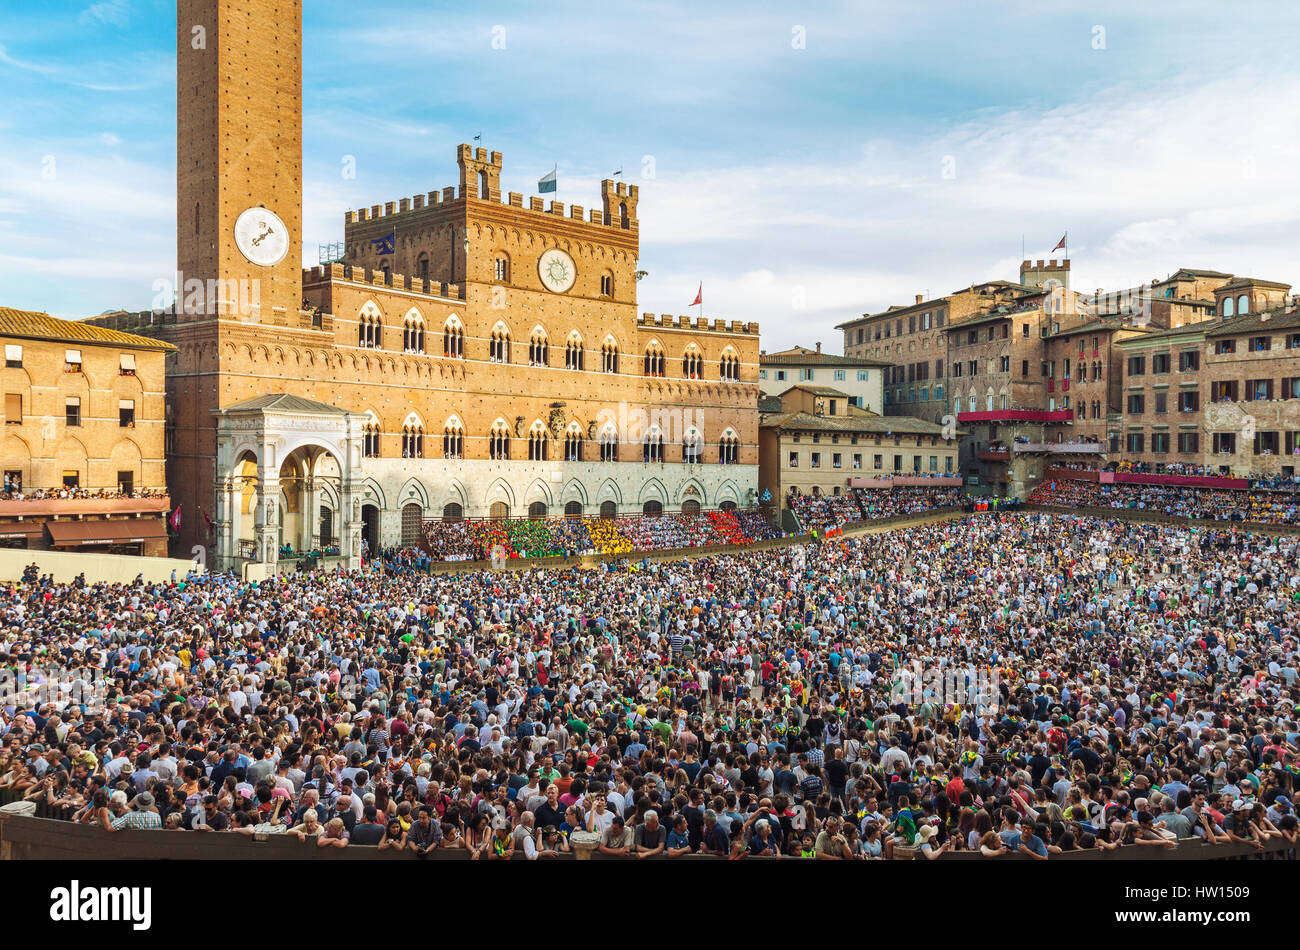 Sienne, ITALIE - 29 juin 2016 : foule de personnes dans la place Piazza del Campo à Sienne, Italie, regarder Palio di Siena traditionnelle course de chevaux. Banque D'Images